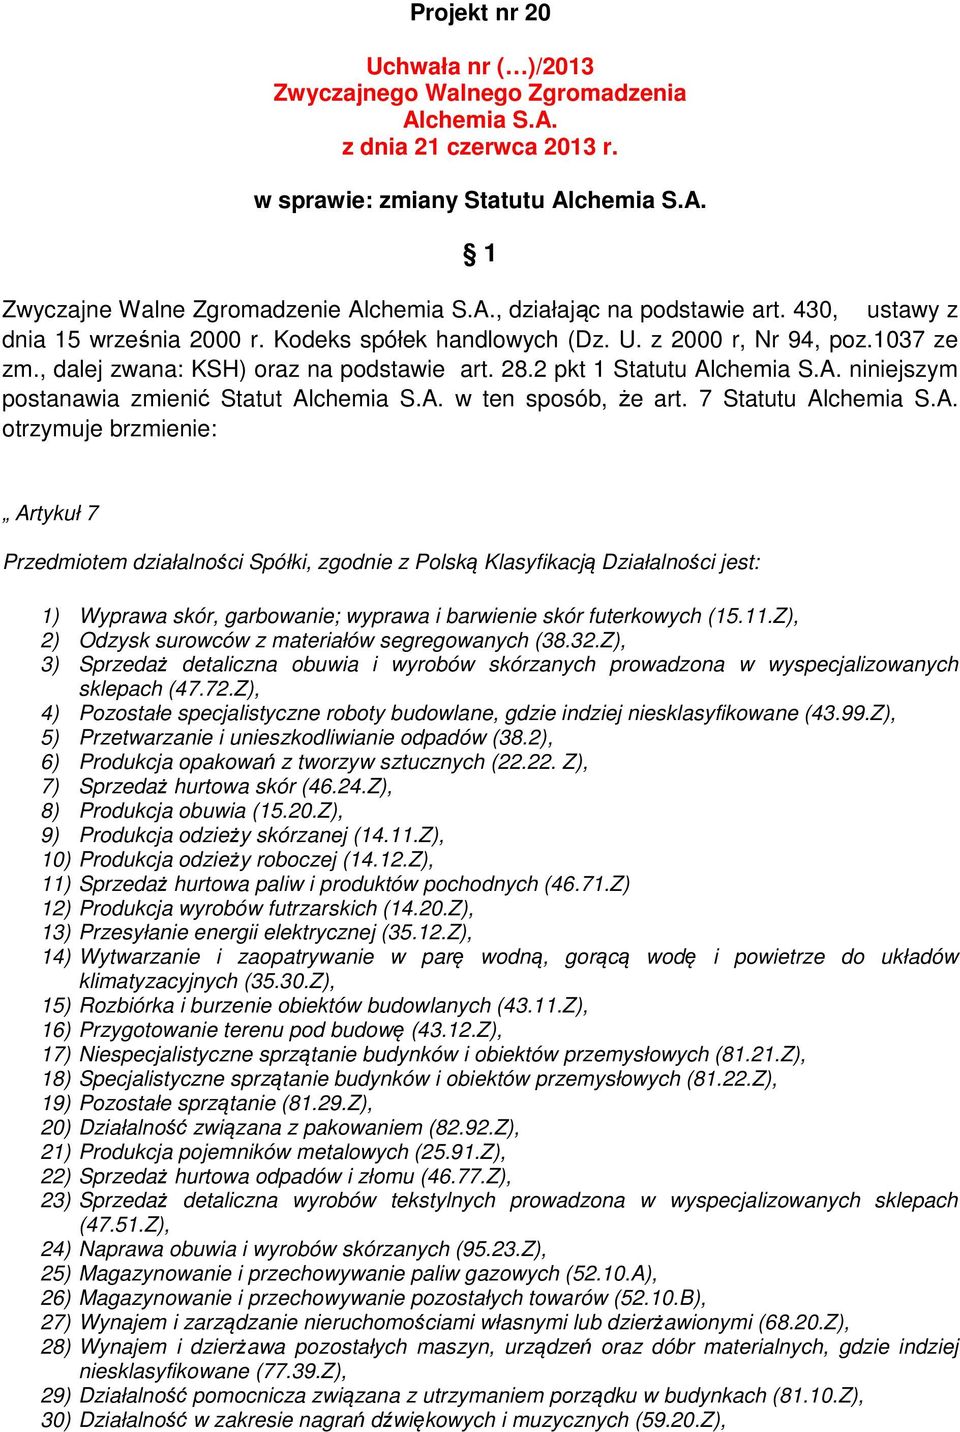 7 Statutu otrzymuje brzmienie: Artykuł 7 Przedmiotem działalności Spółki, zgodnie z Polską Klasyfikacją Działalności jest: 1) Wyprawa skór, garbowanie; wyprawa i barwienie skór futerkowych (15.11.